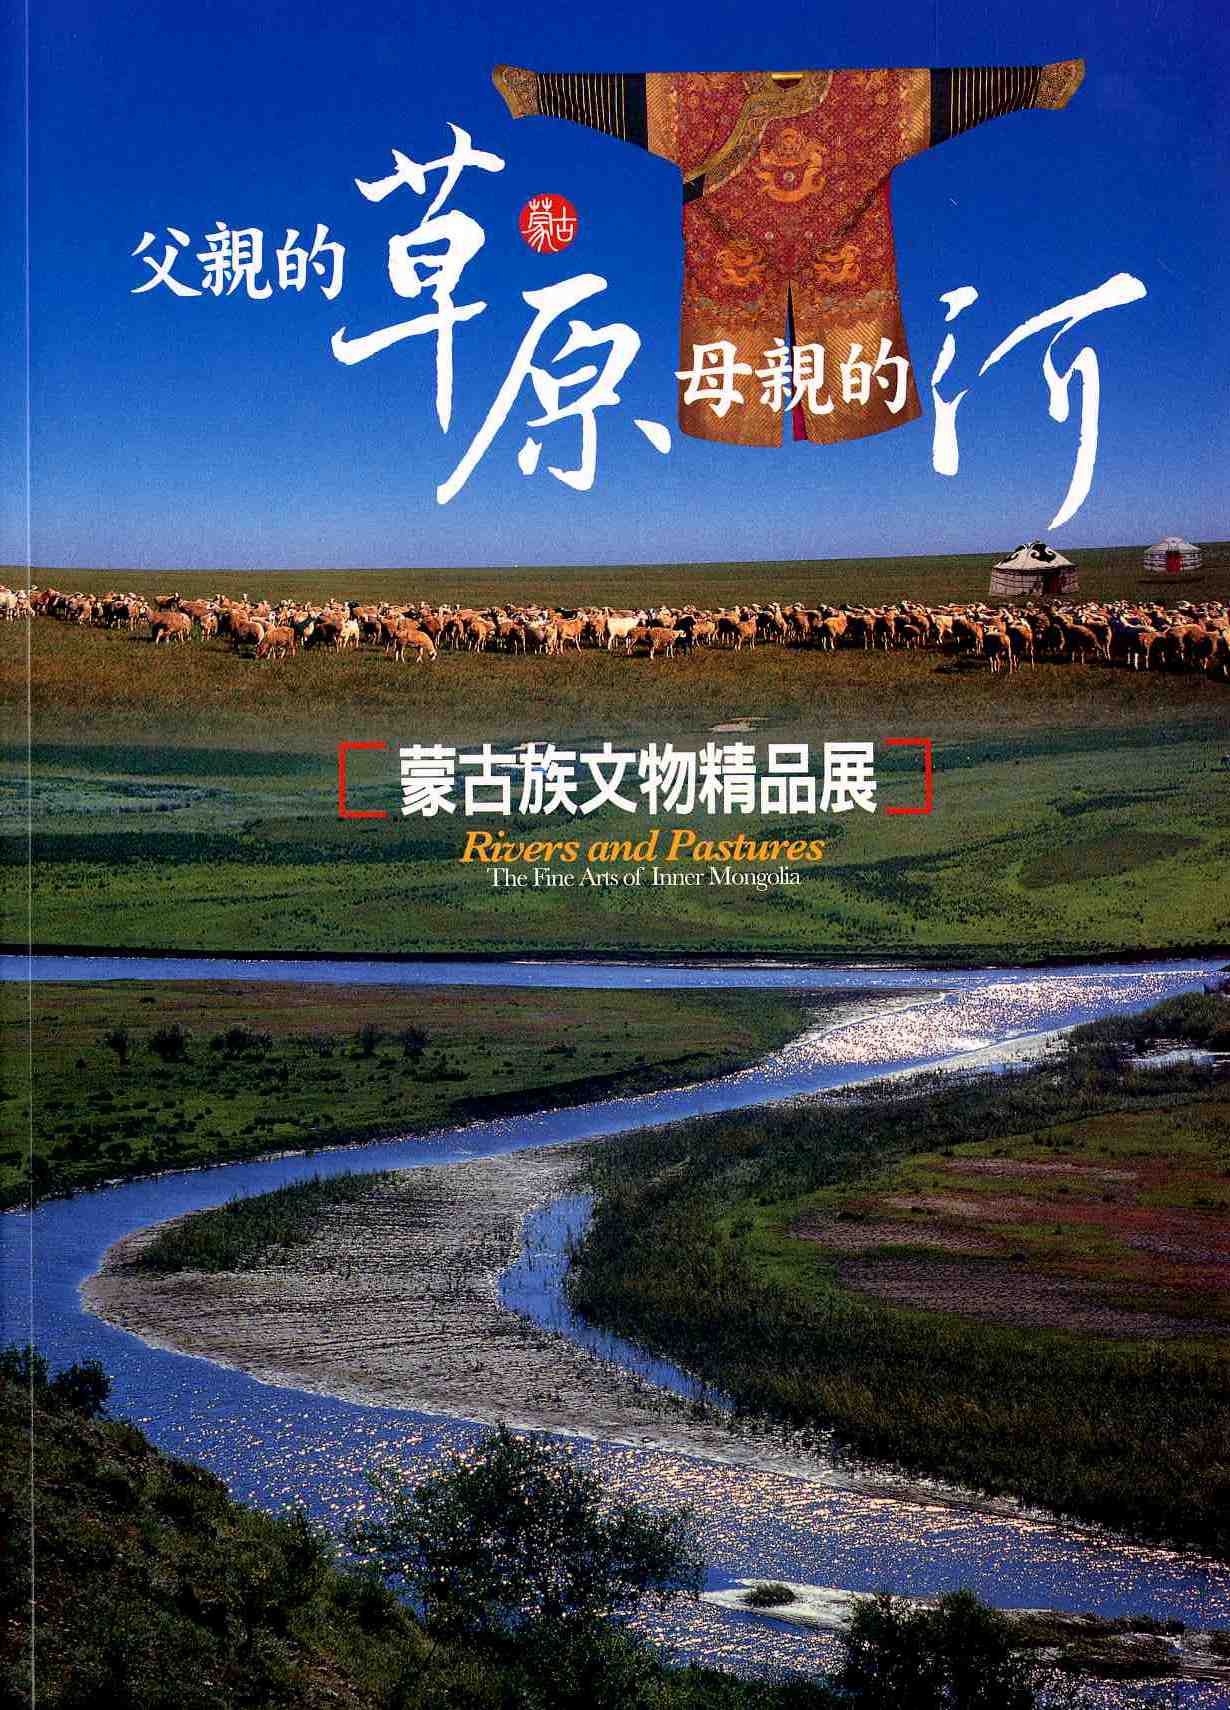 父親的草原母親的河-蒙古族文物精品展